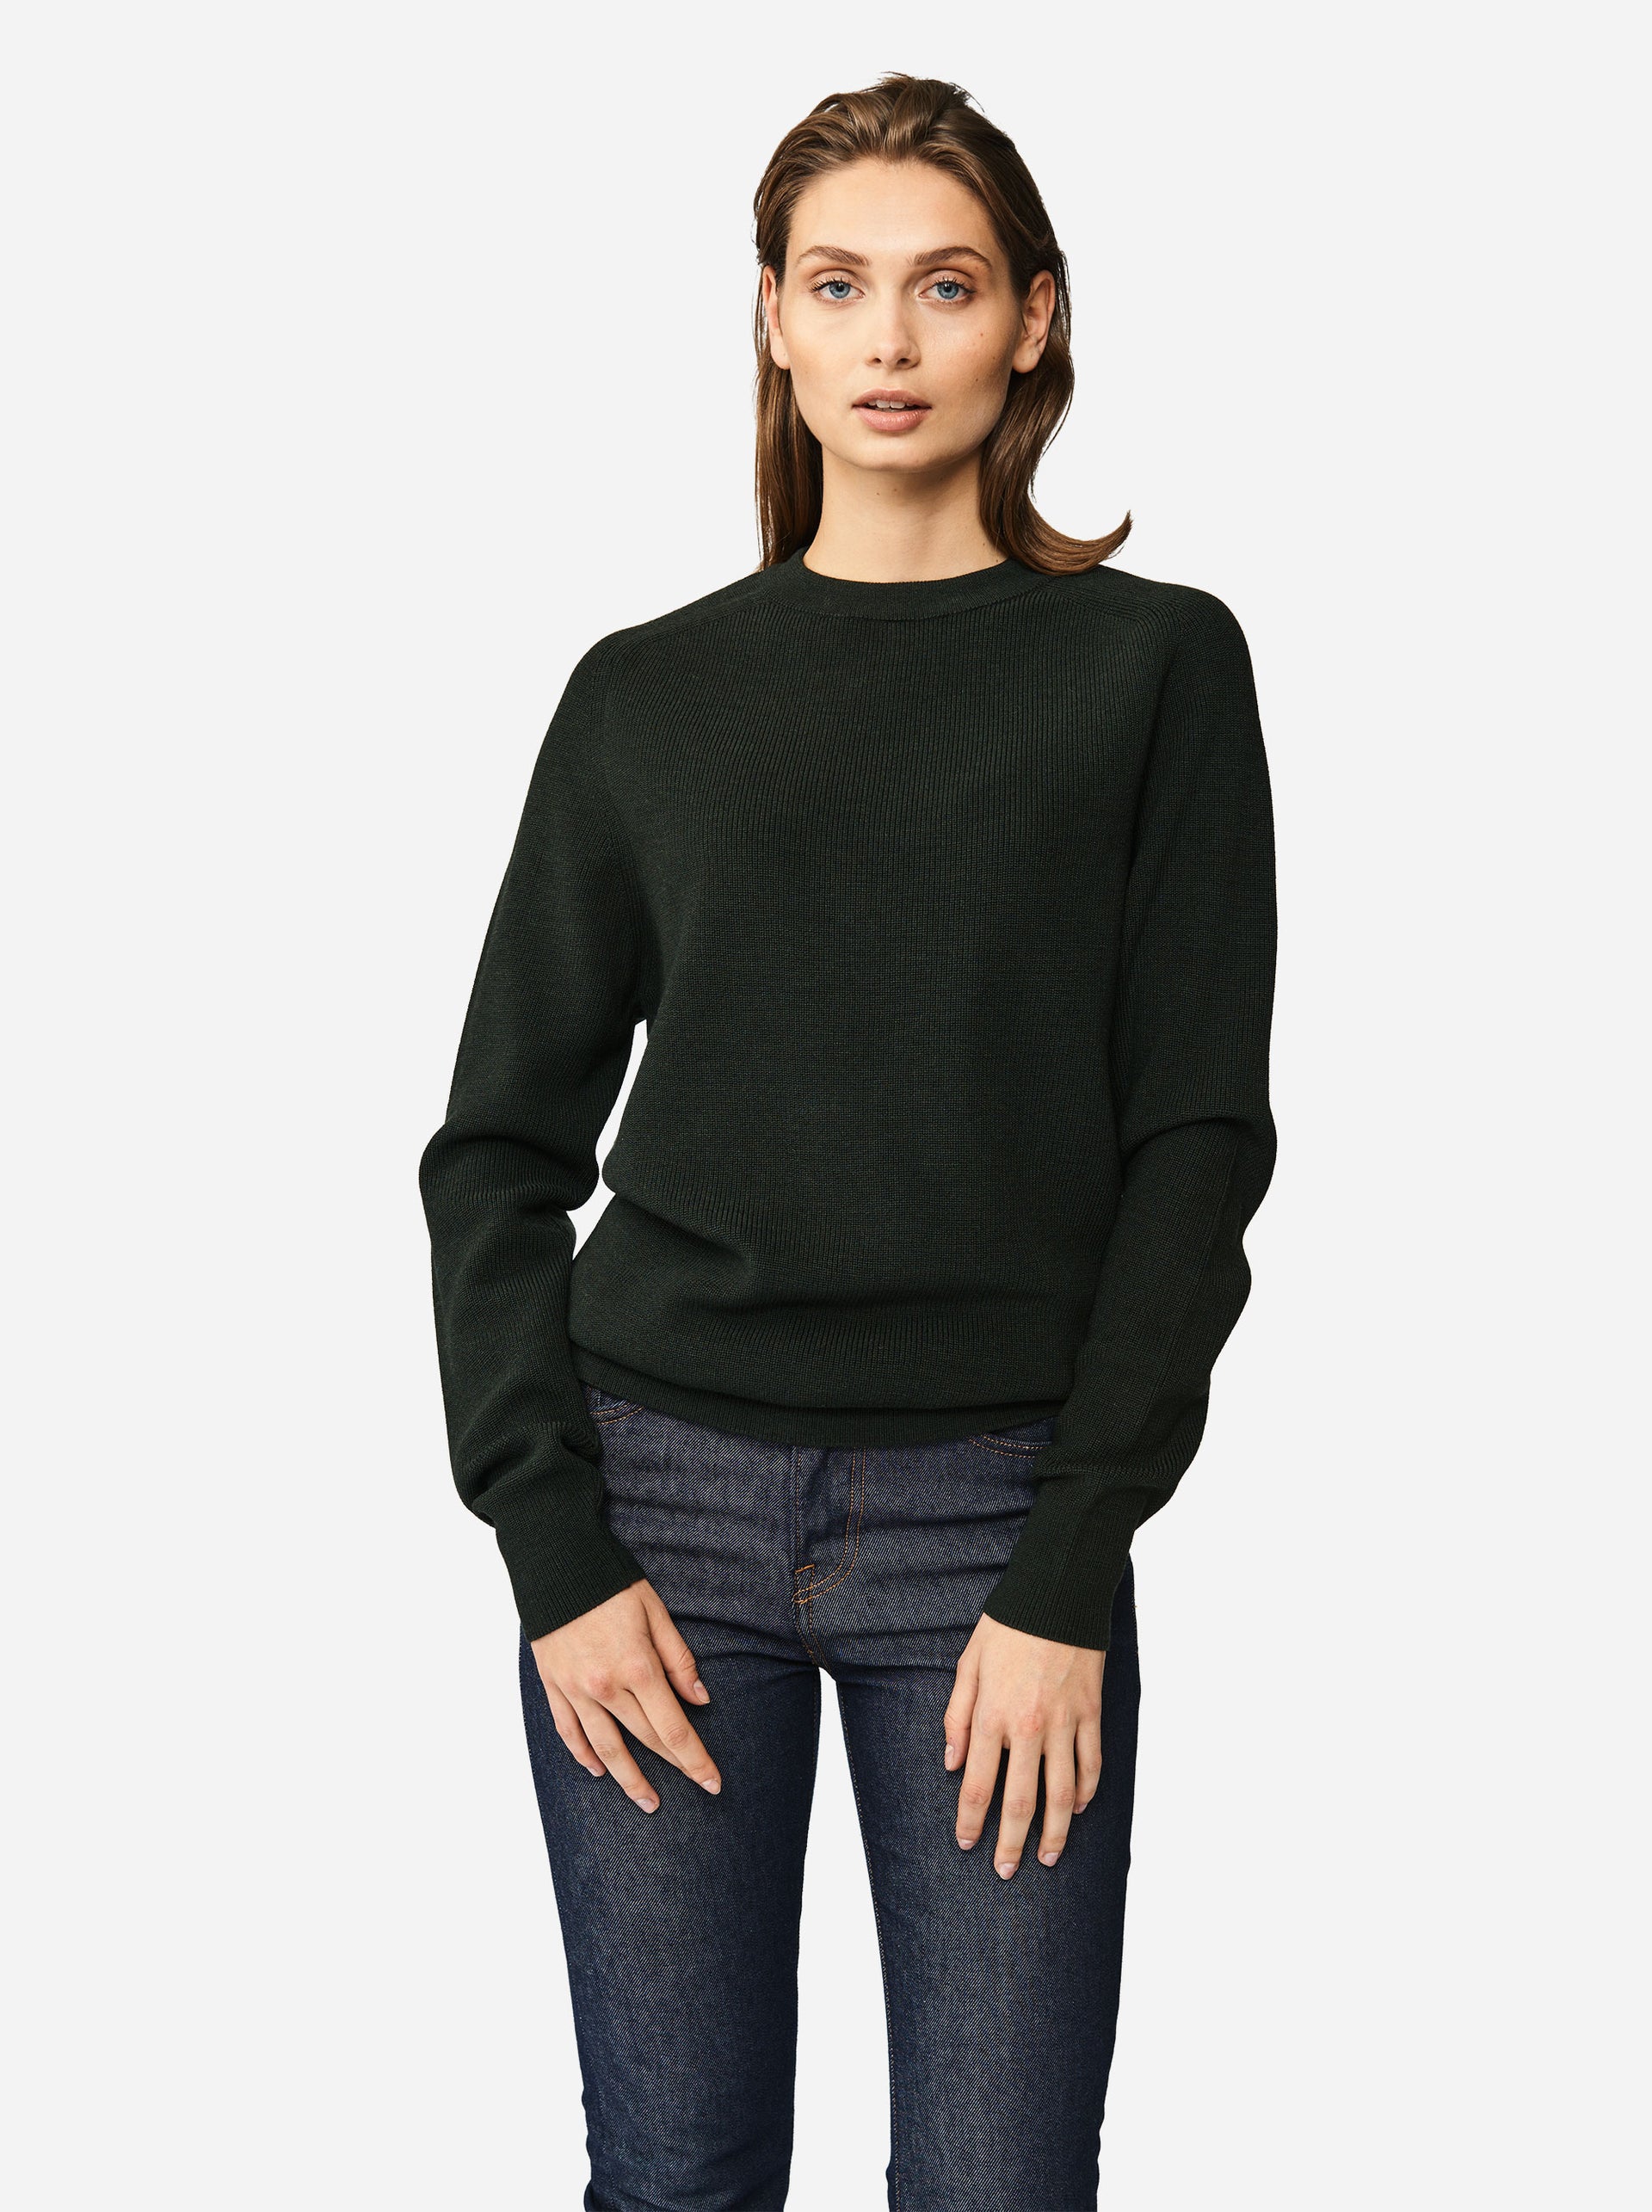 Teym • The Merino Sweater for women • Crewneck • Green • 100% Merino wool